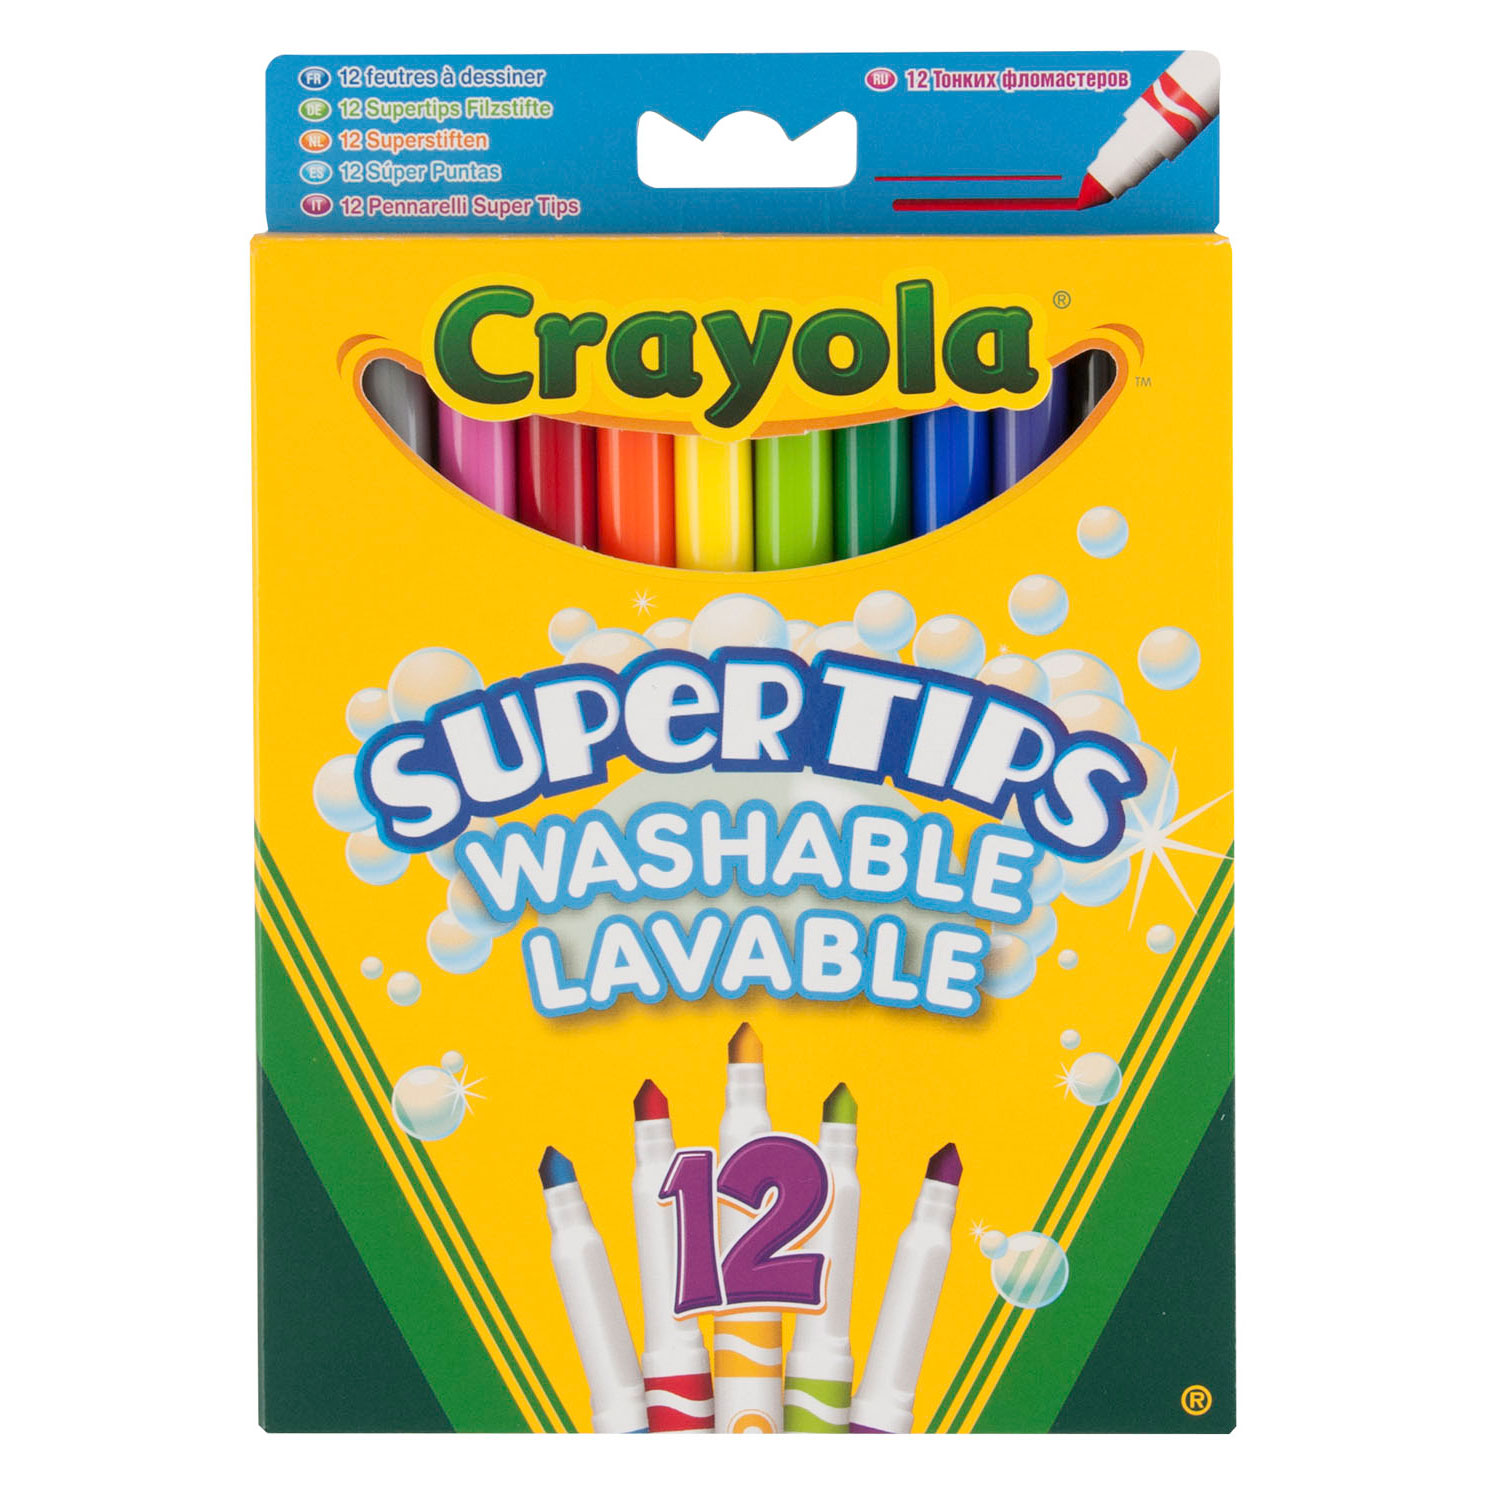 Crayola Filzstifte mit Super Point, 12 Stk.